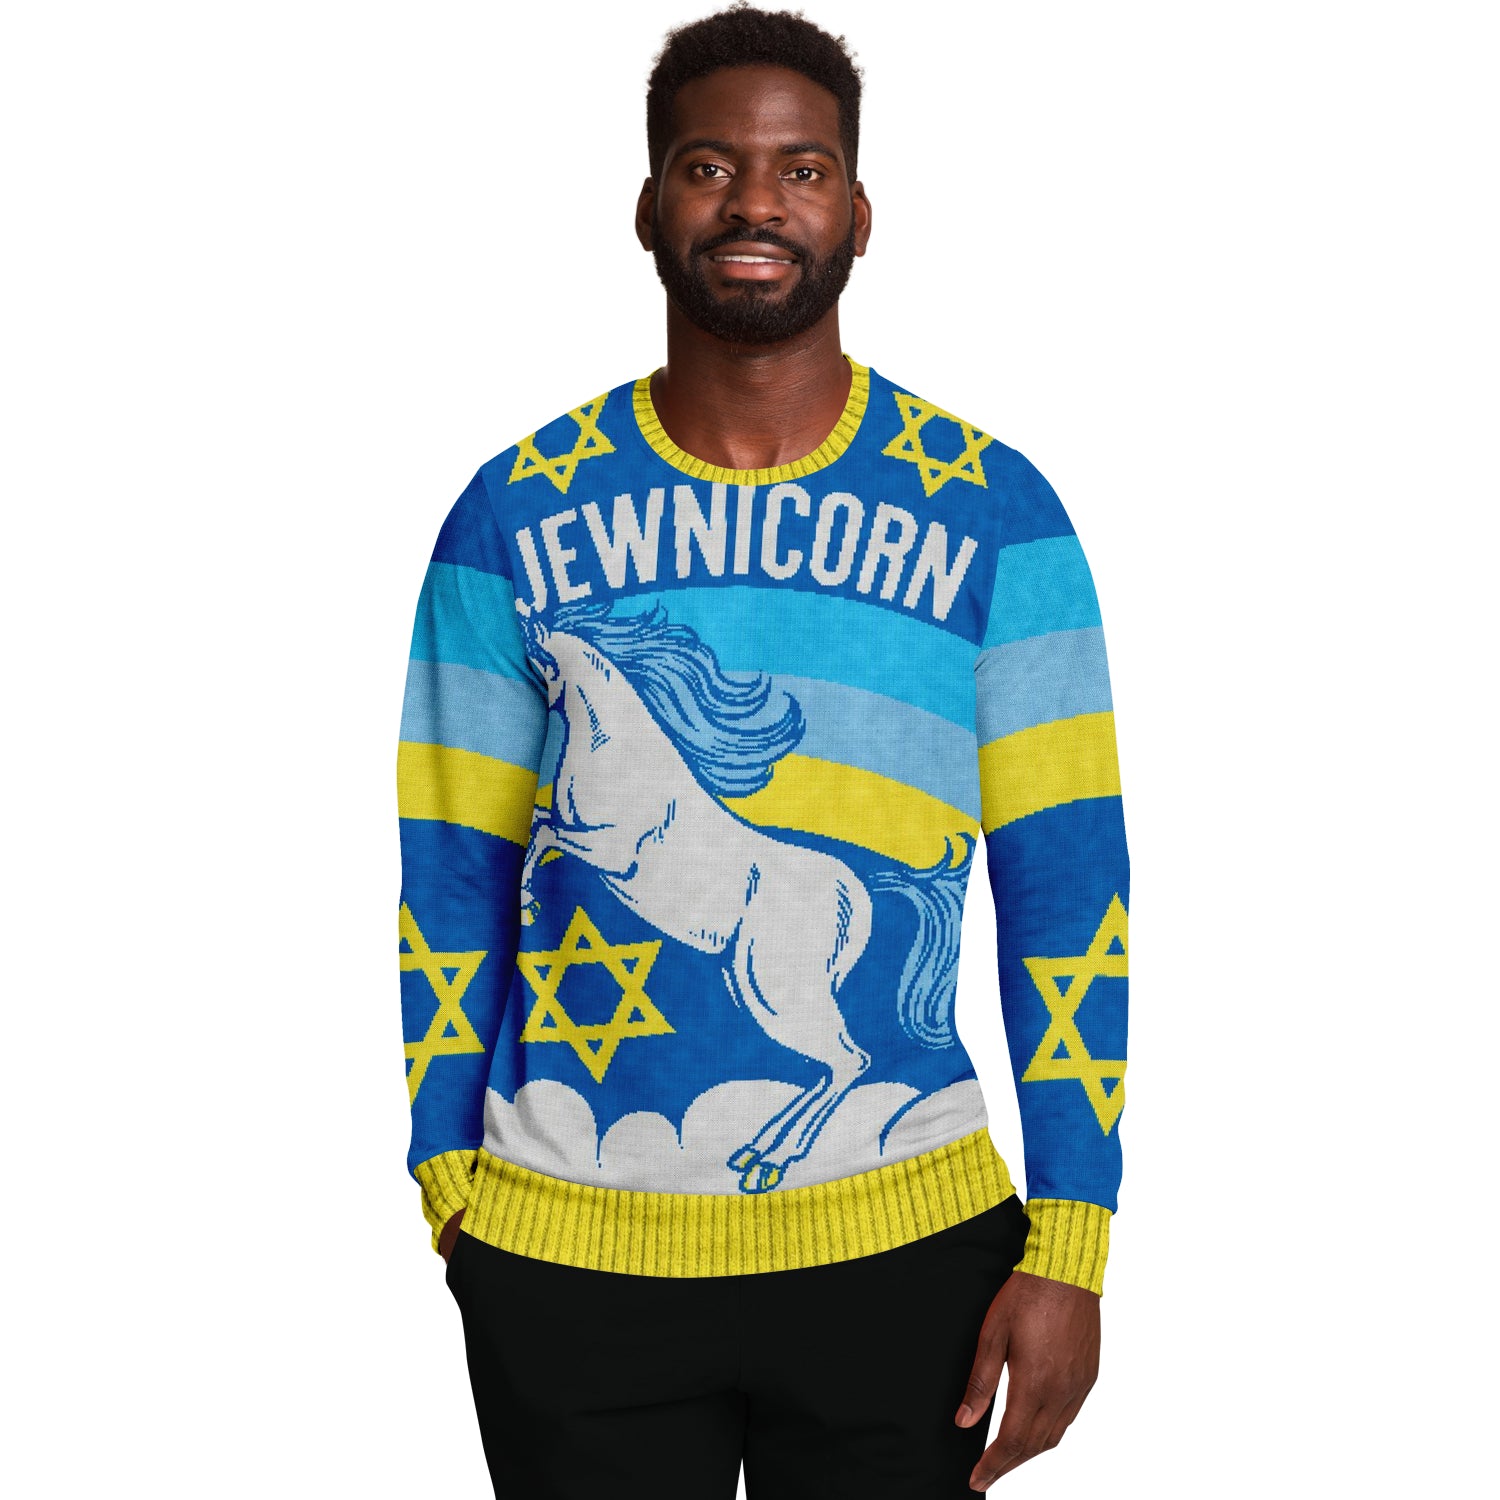 Jewnicorn - Ugly Christmas Sweater